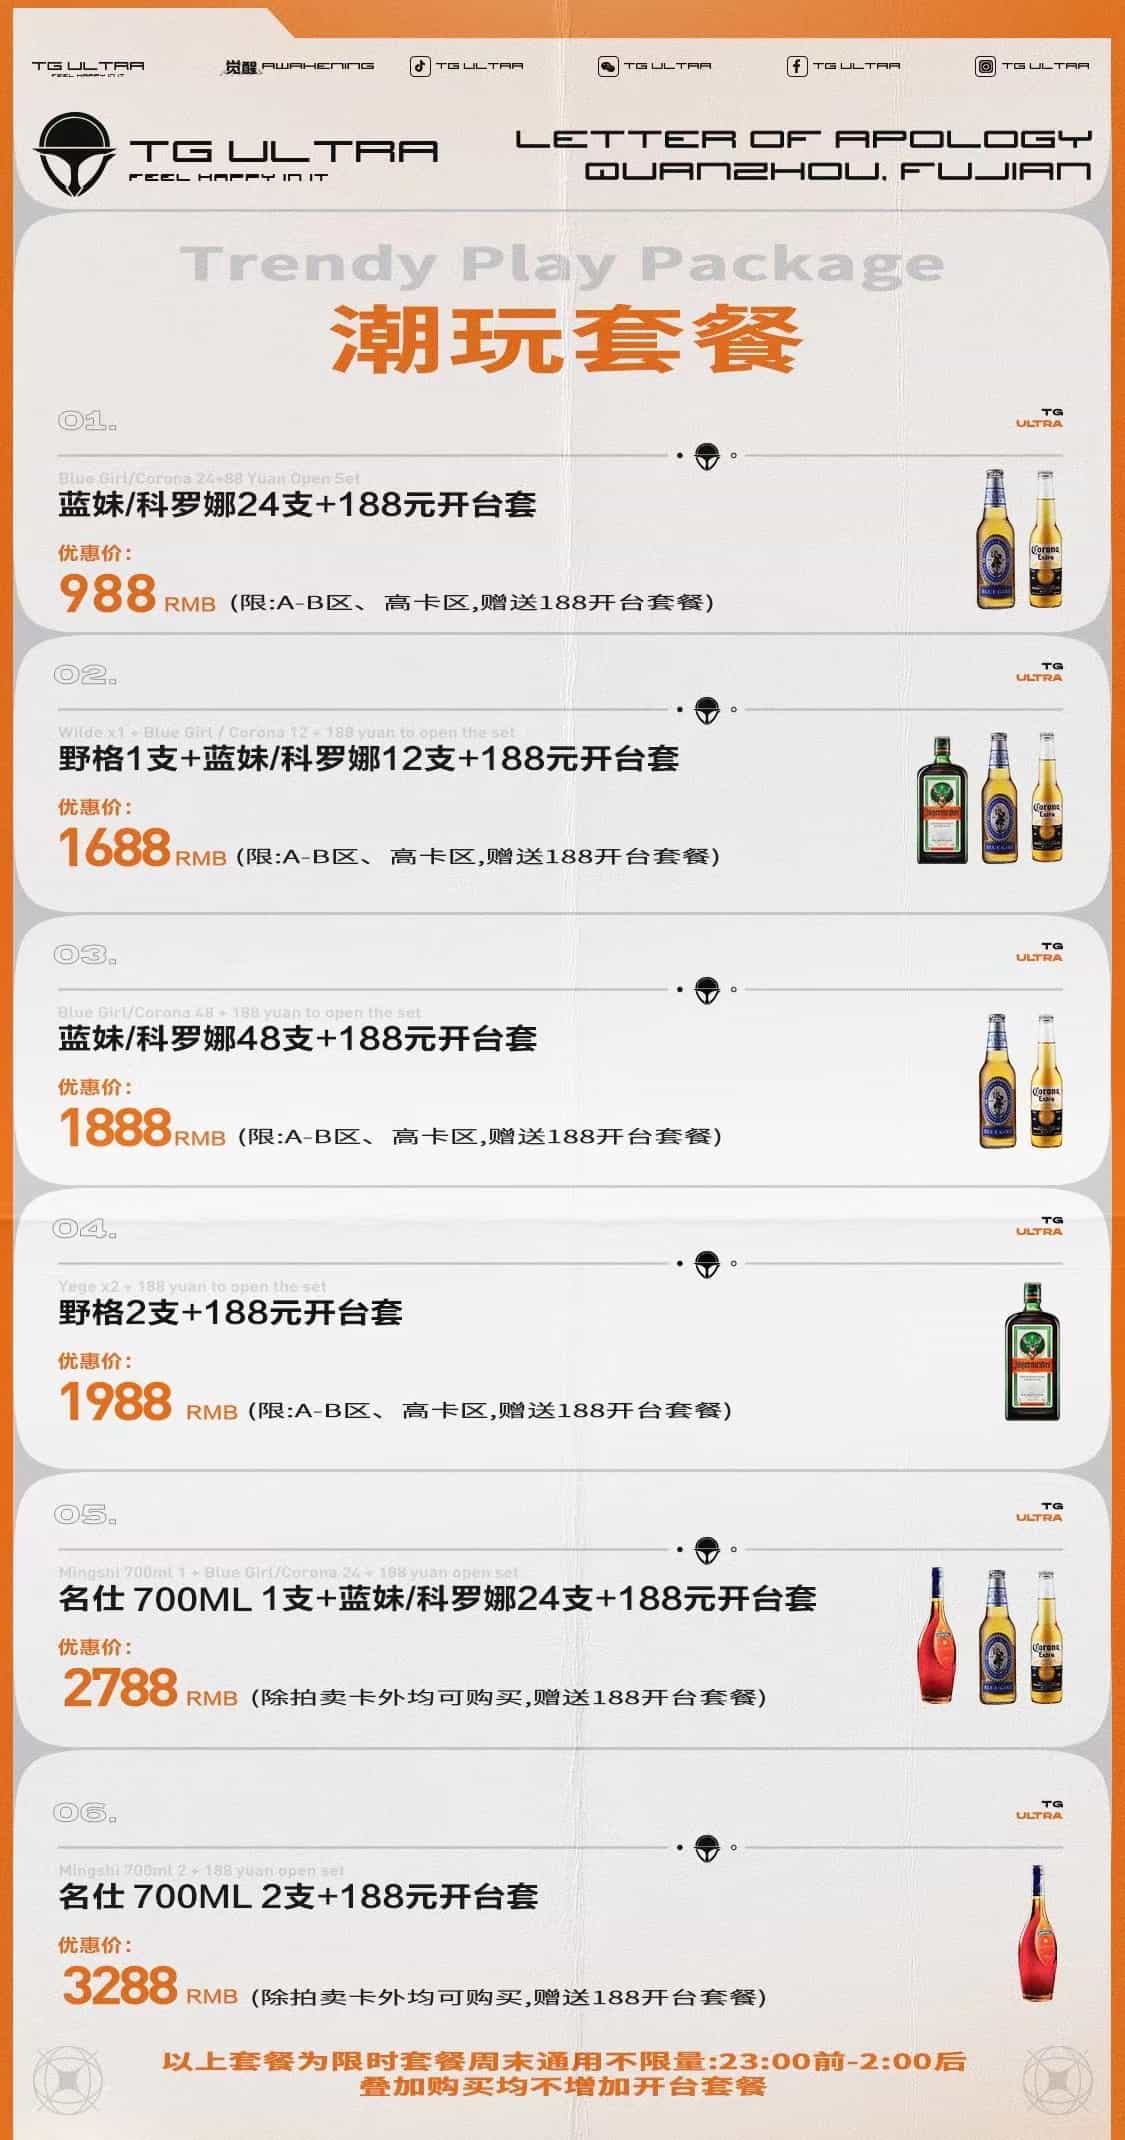 广州天宫酒吧消费表图片